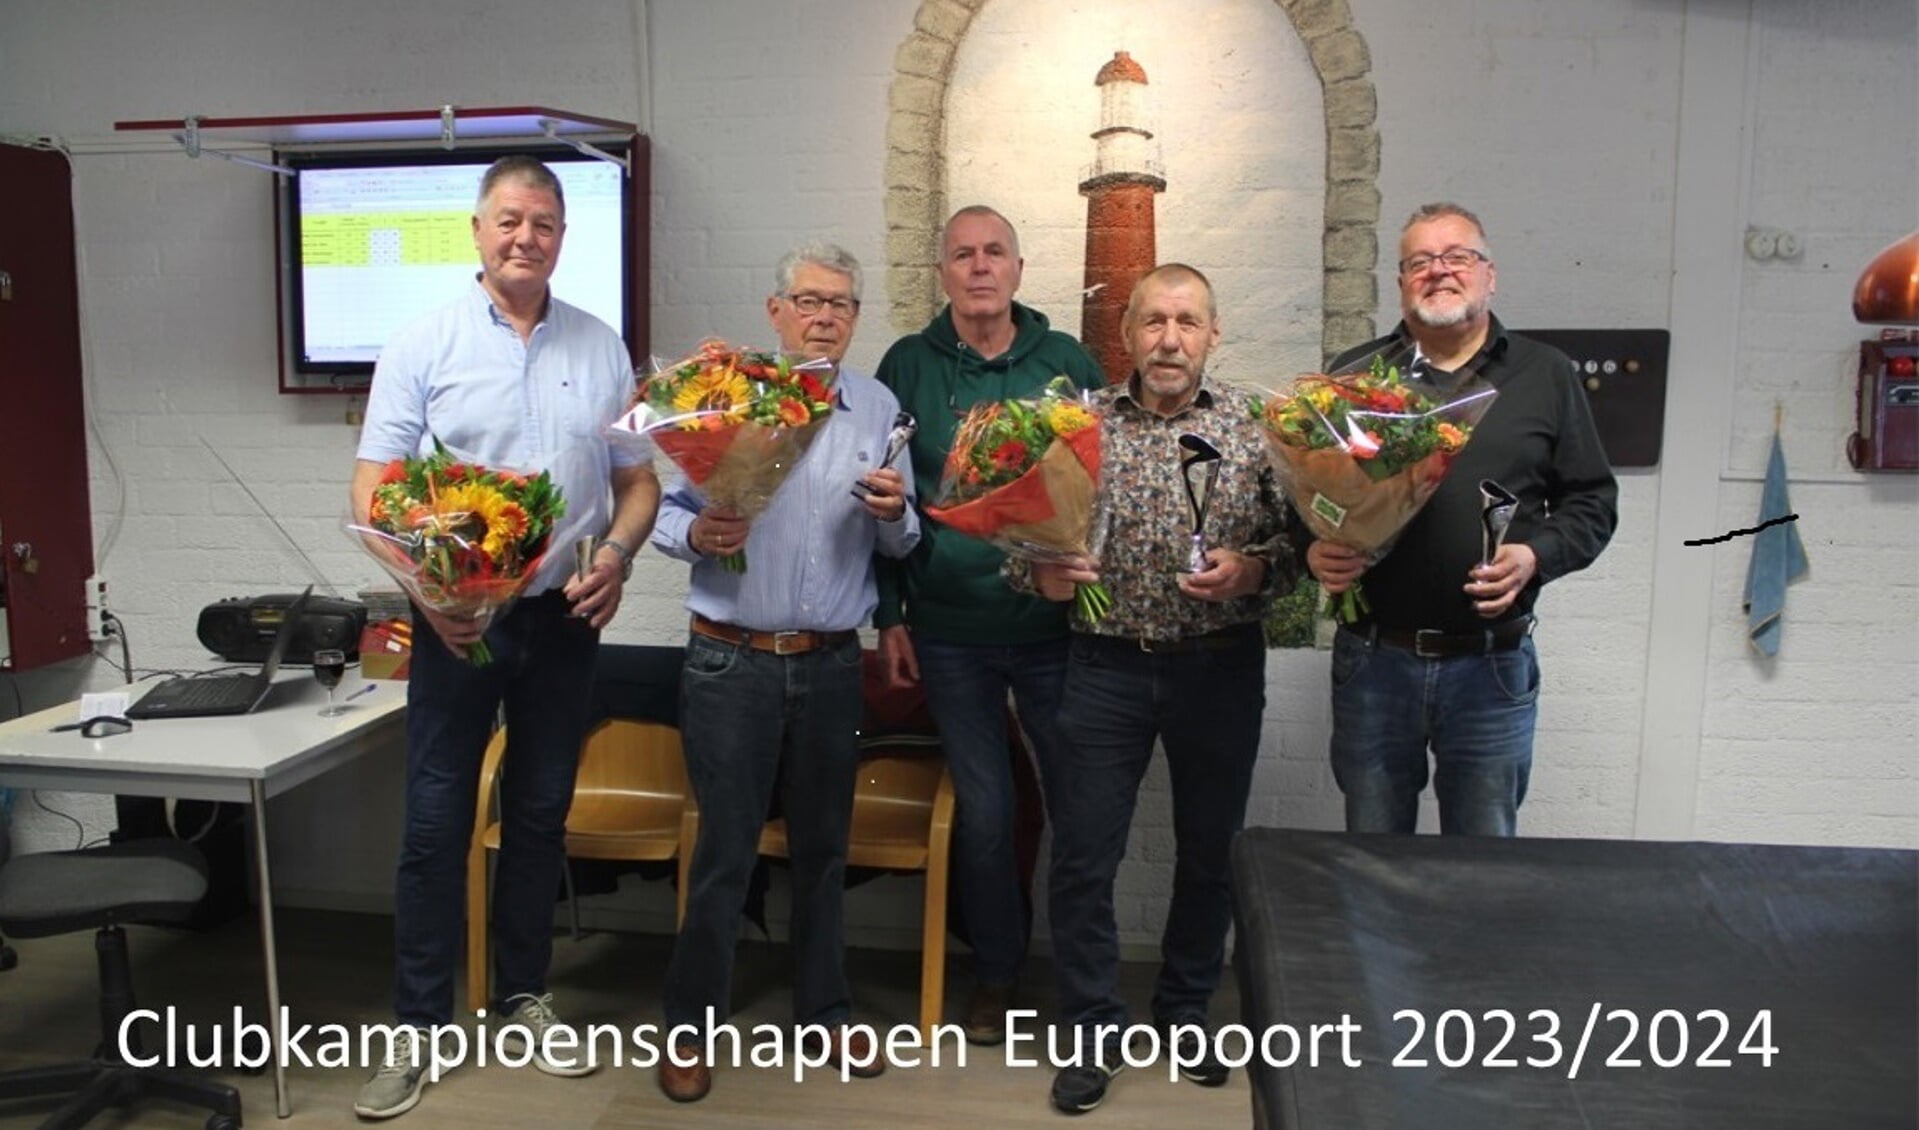 Van links naar rechts met de bloemen: Peter Grootendorst, Louis Vroonland, Hans den Otter en Hans Steenbergen. Mid-achter voorzitter Toon Willemsen.